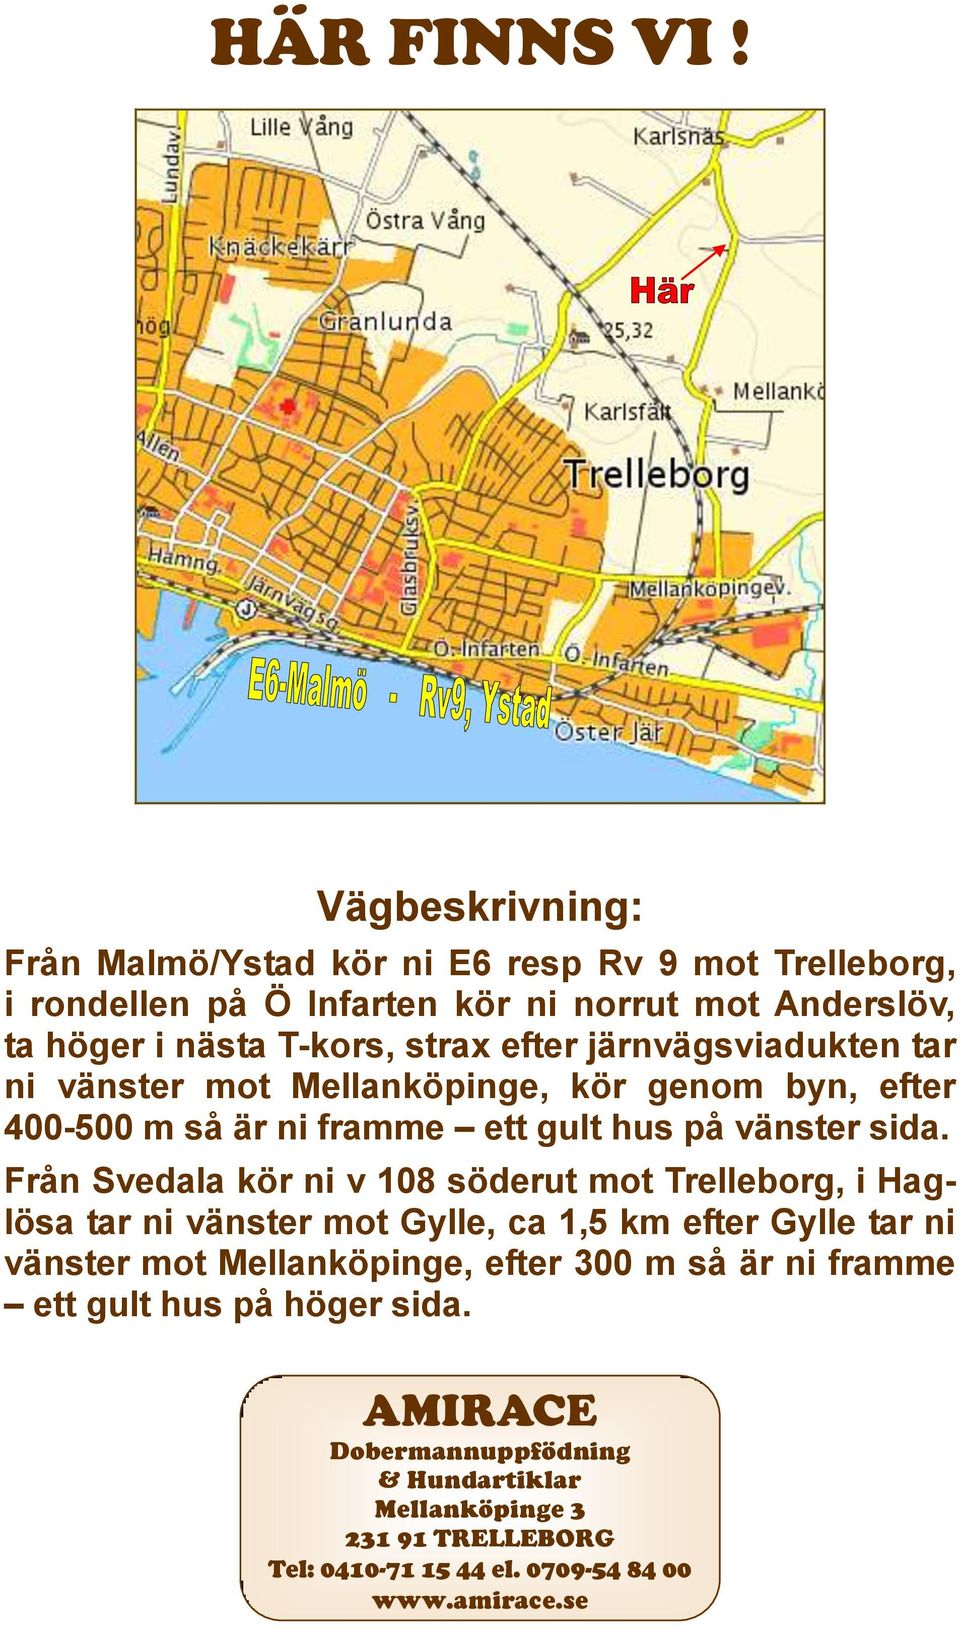 efter järnvägsviadukten tar ni vänster mot Mellanköpinge, kör genom byn, efter 400-500 m så är ni framme ett gult hus på vänster sida.